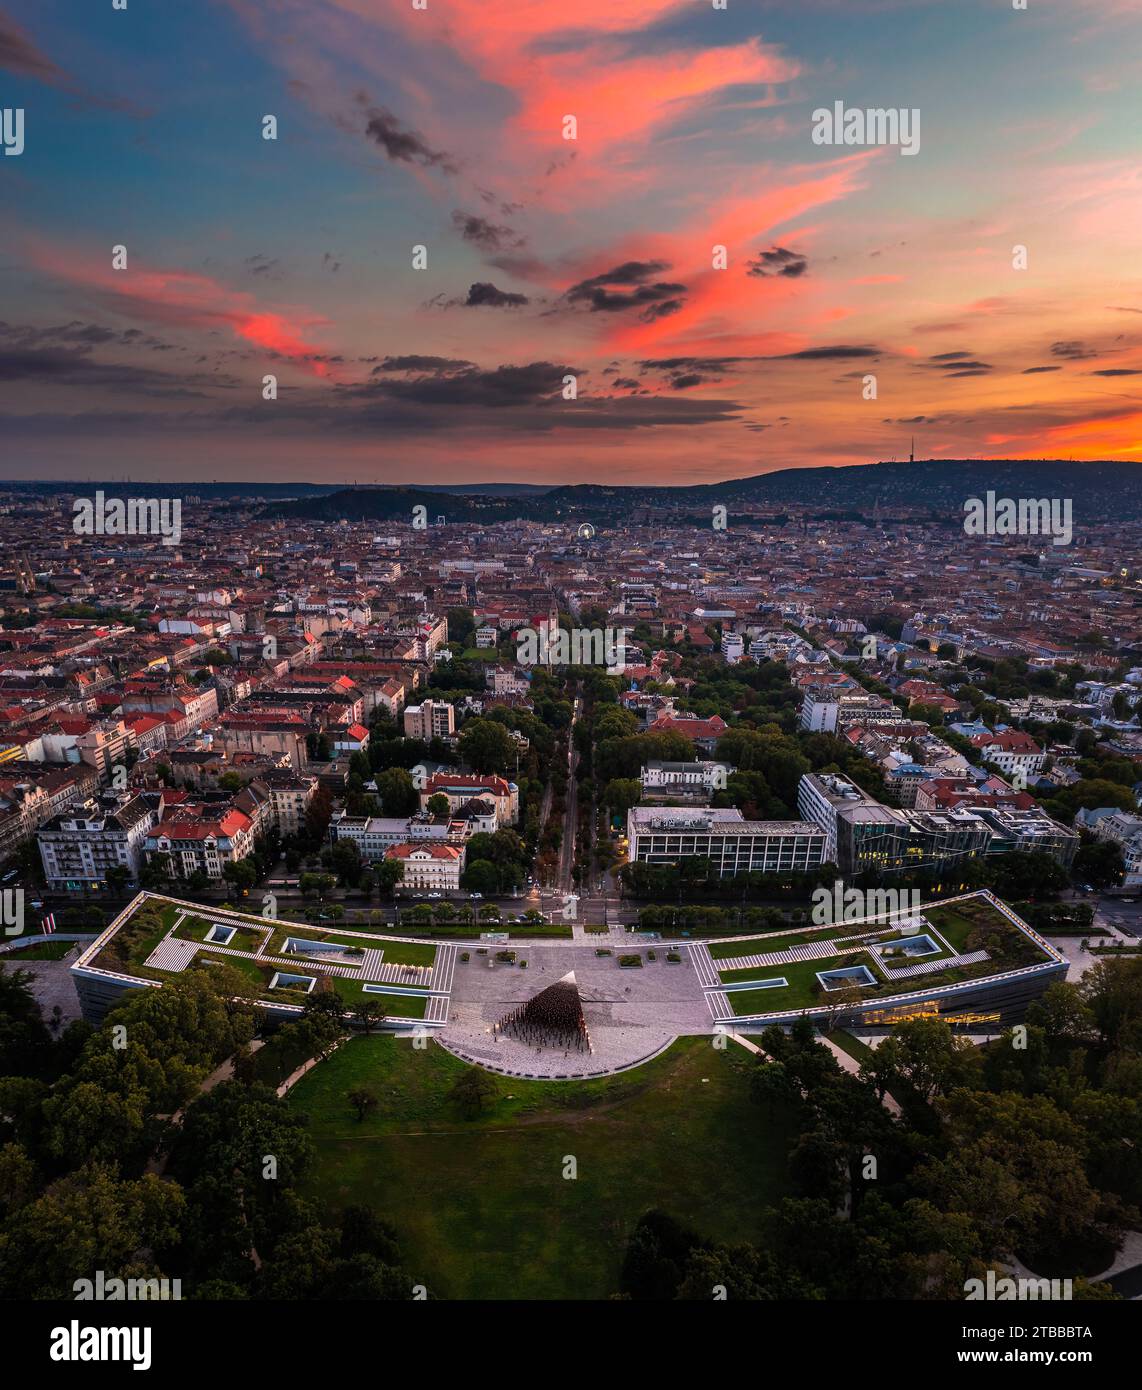 Budapest, Ungarn - Panoramablick auf das Ethnographische Museum im Stadtpark mit der Skyline von Budapest im Hintergrund und farbenfroher Sonnenuntergang Stockfoto